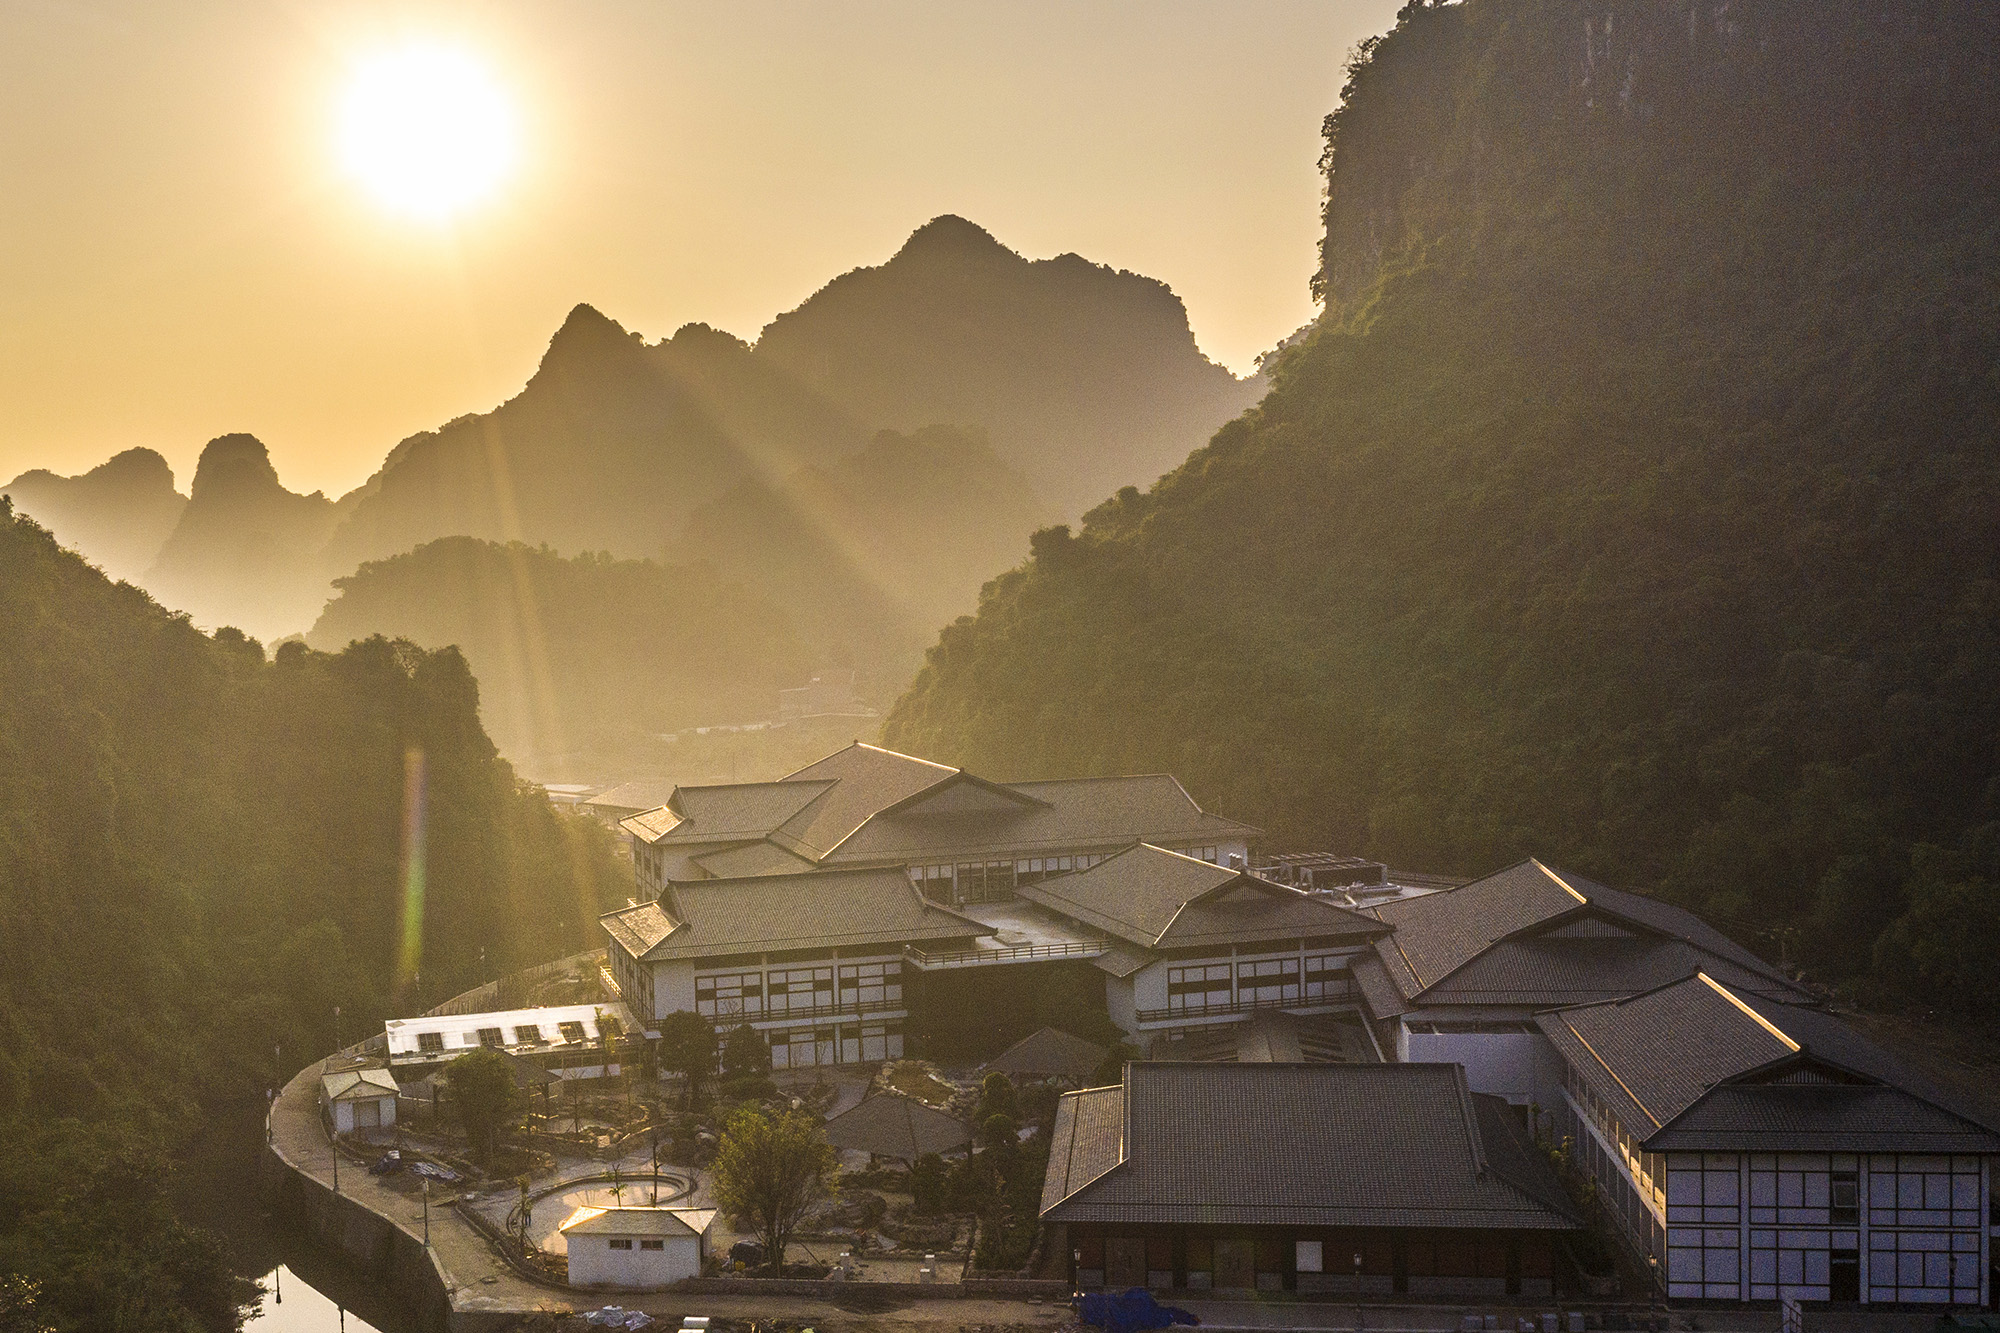 Yoko Onsen Quang Hanh Quảng Ninh - Phong cách một ngôi làng đậm chất Nhật bản giữa yên tĩnh núi rừng